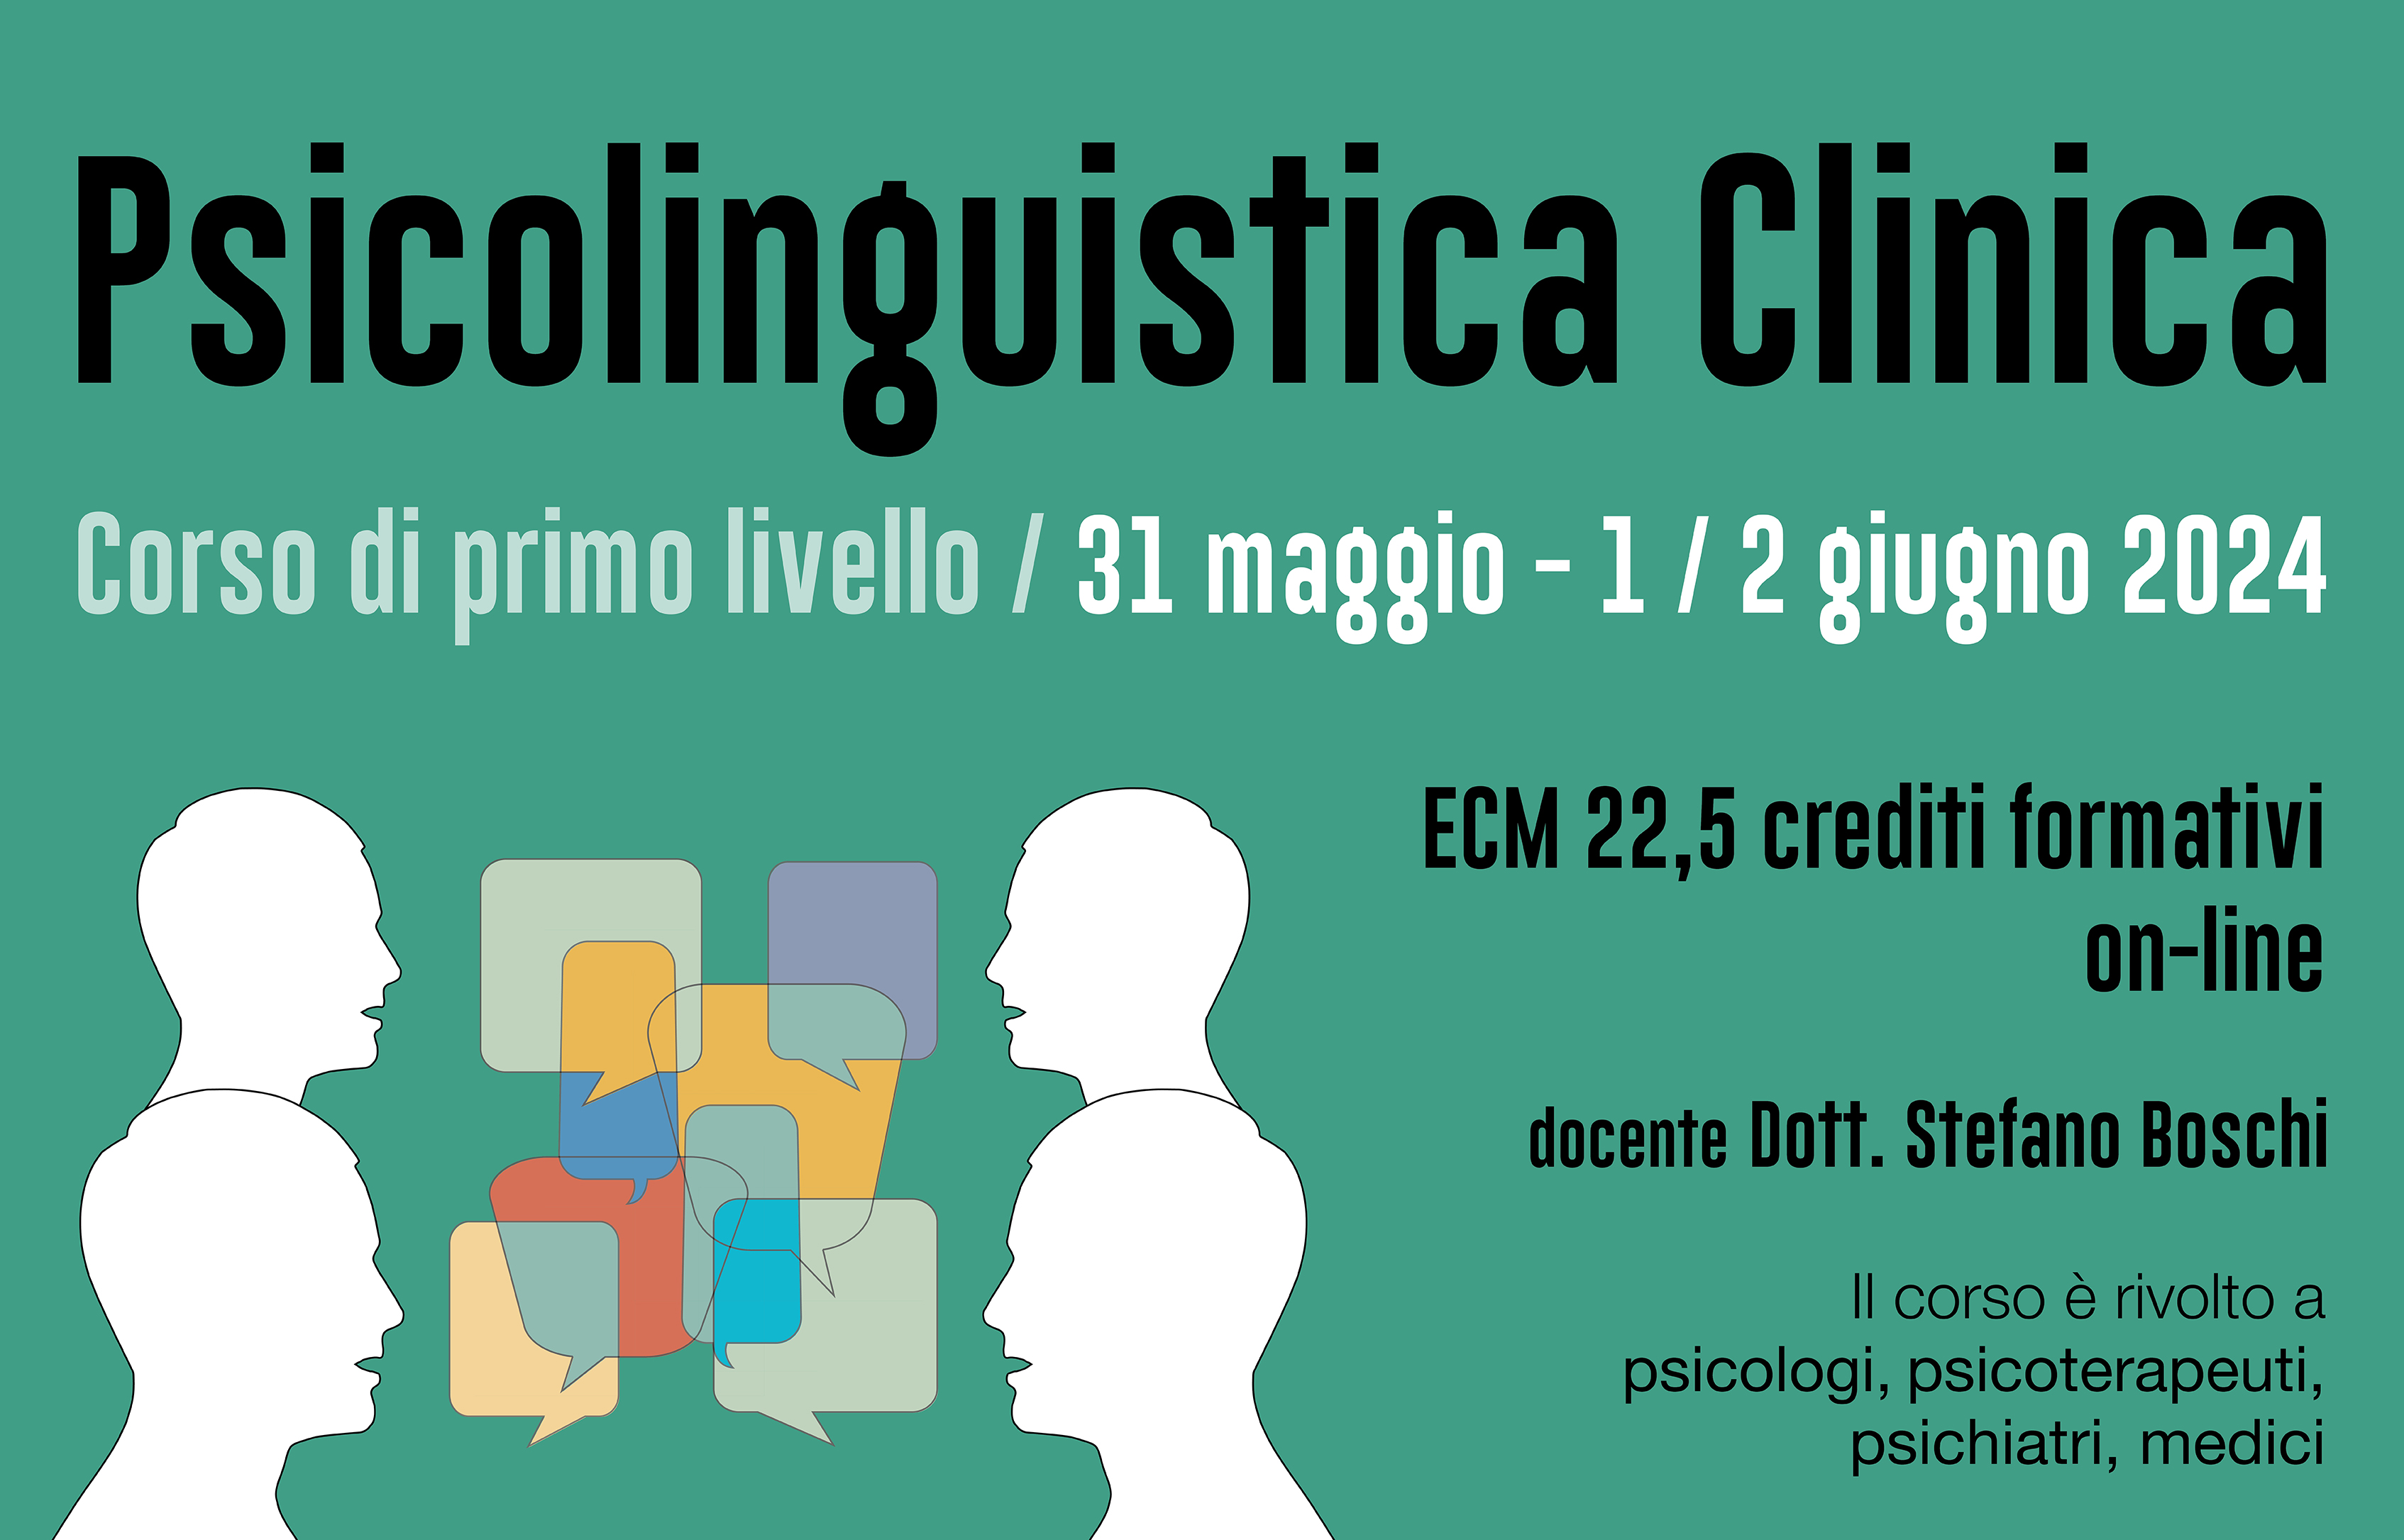 Course Image Psicolinguistica clinica - Corso di primo livello